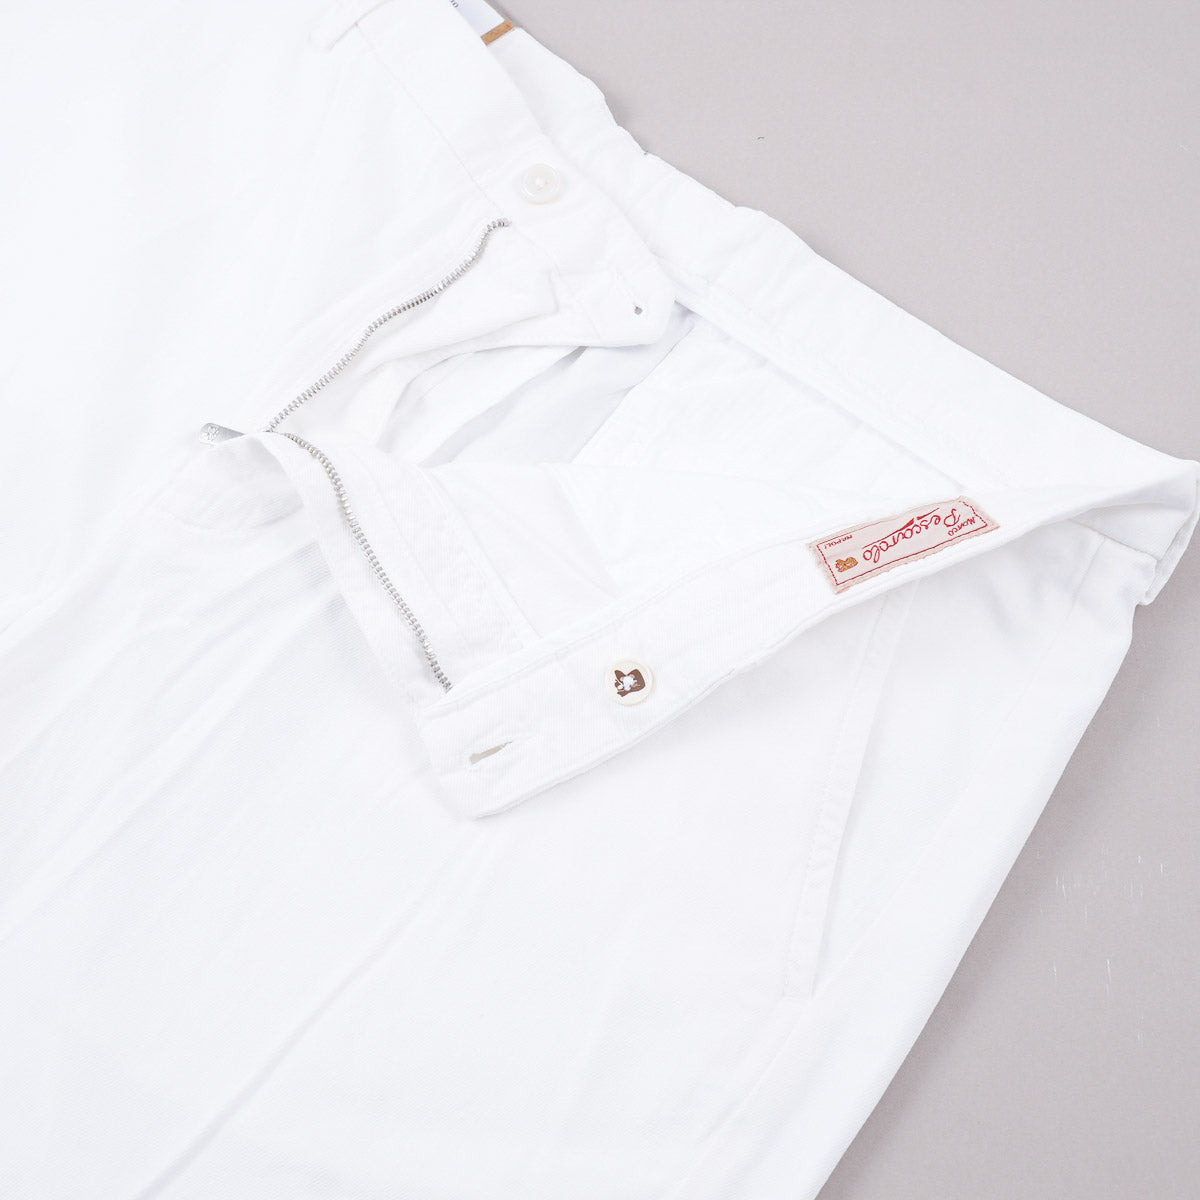 Marco Pescarolo Cotton-Silk-Linen Shorts - Top Shelf Apparel